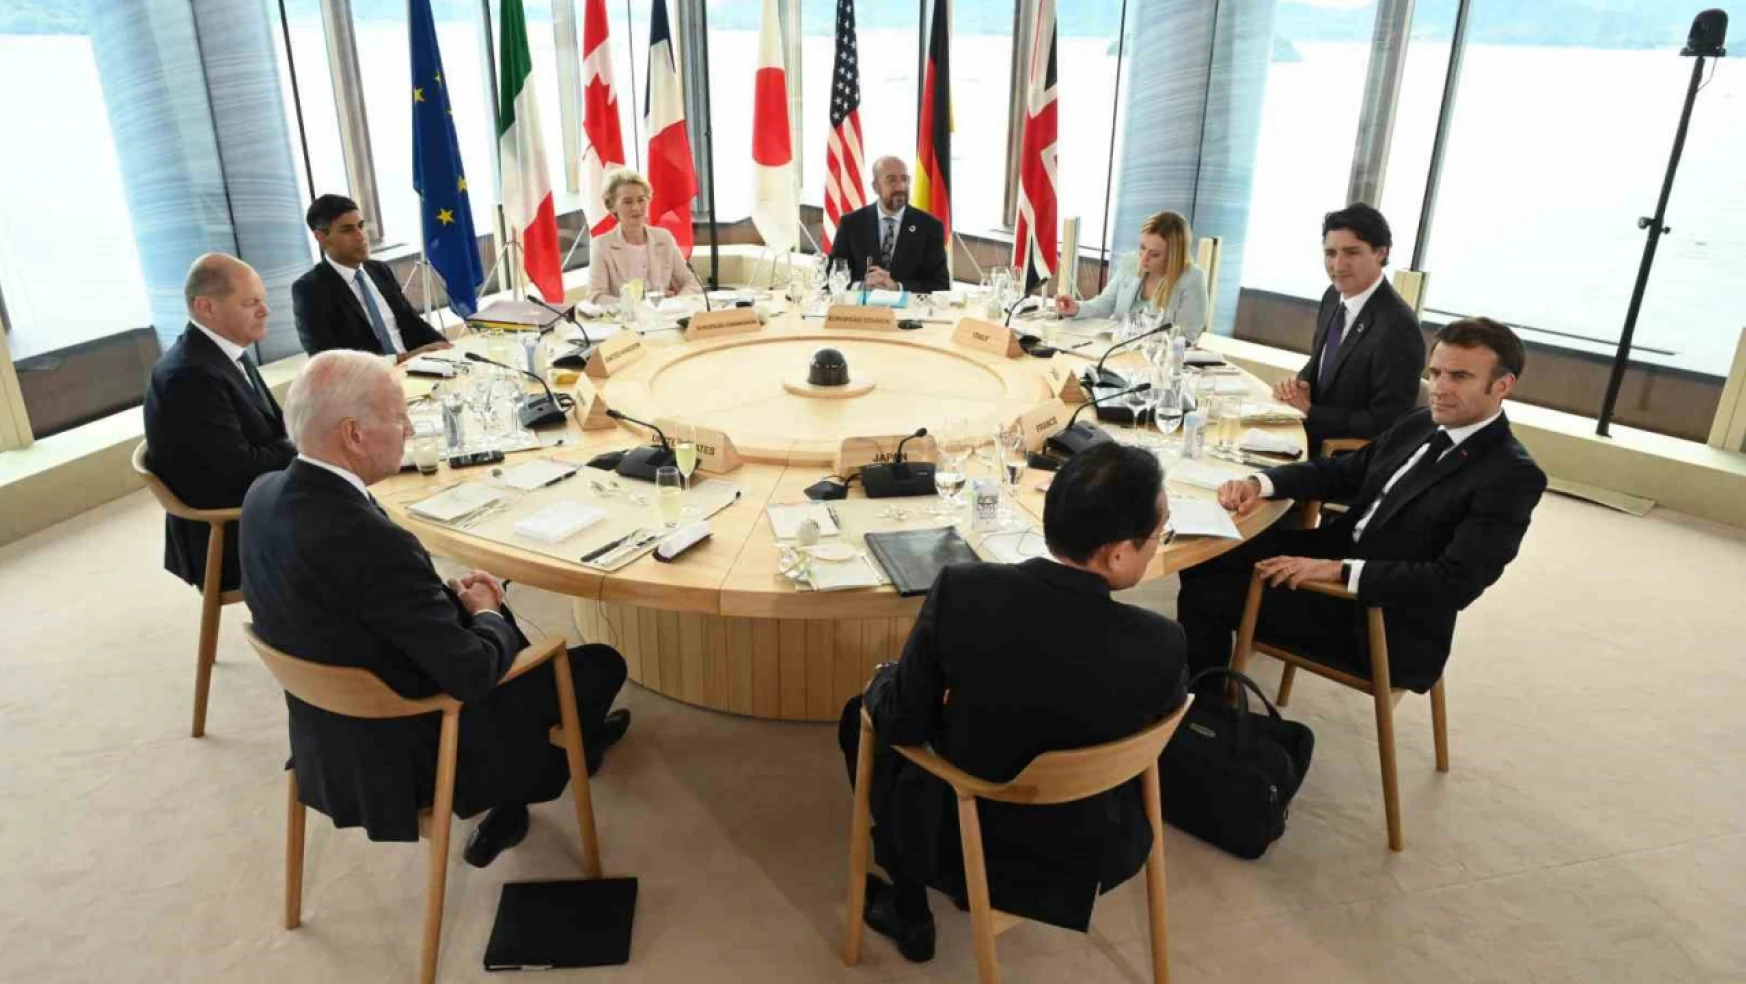 G7 liderlerinden Ukrayna bildirisi